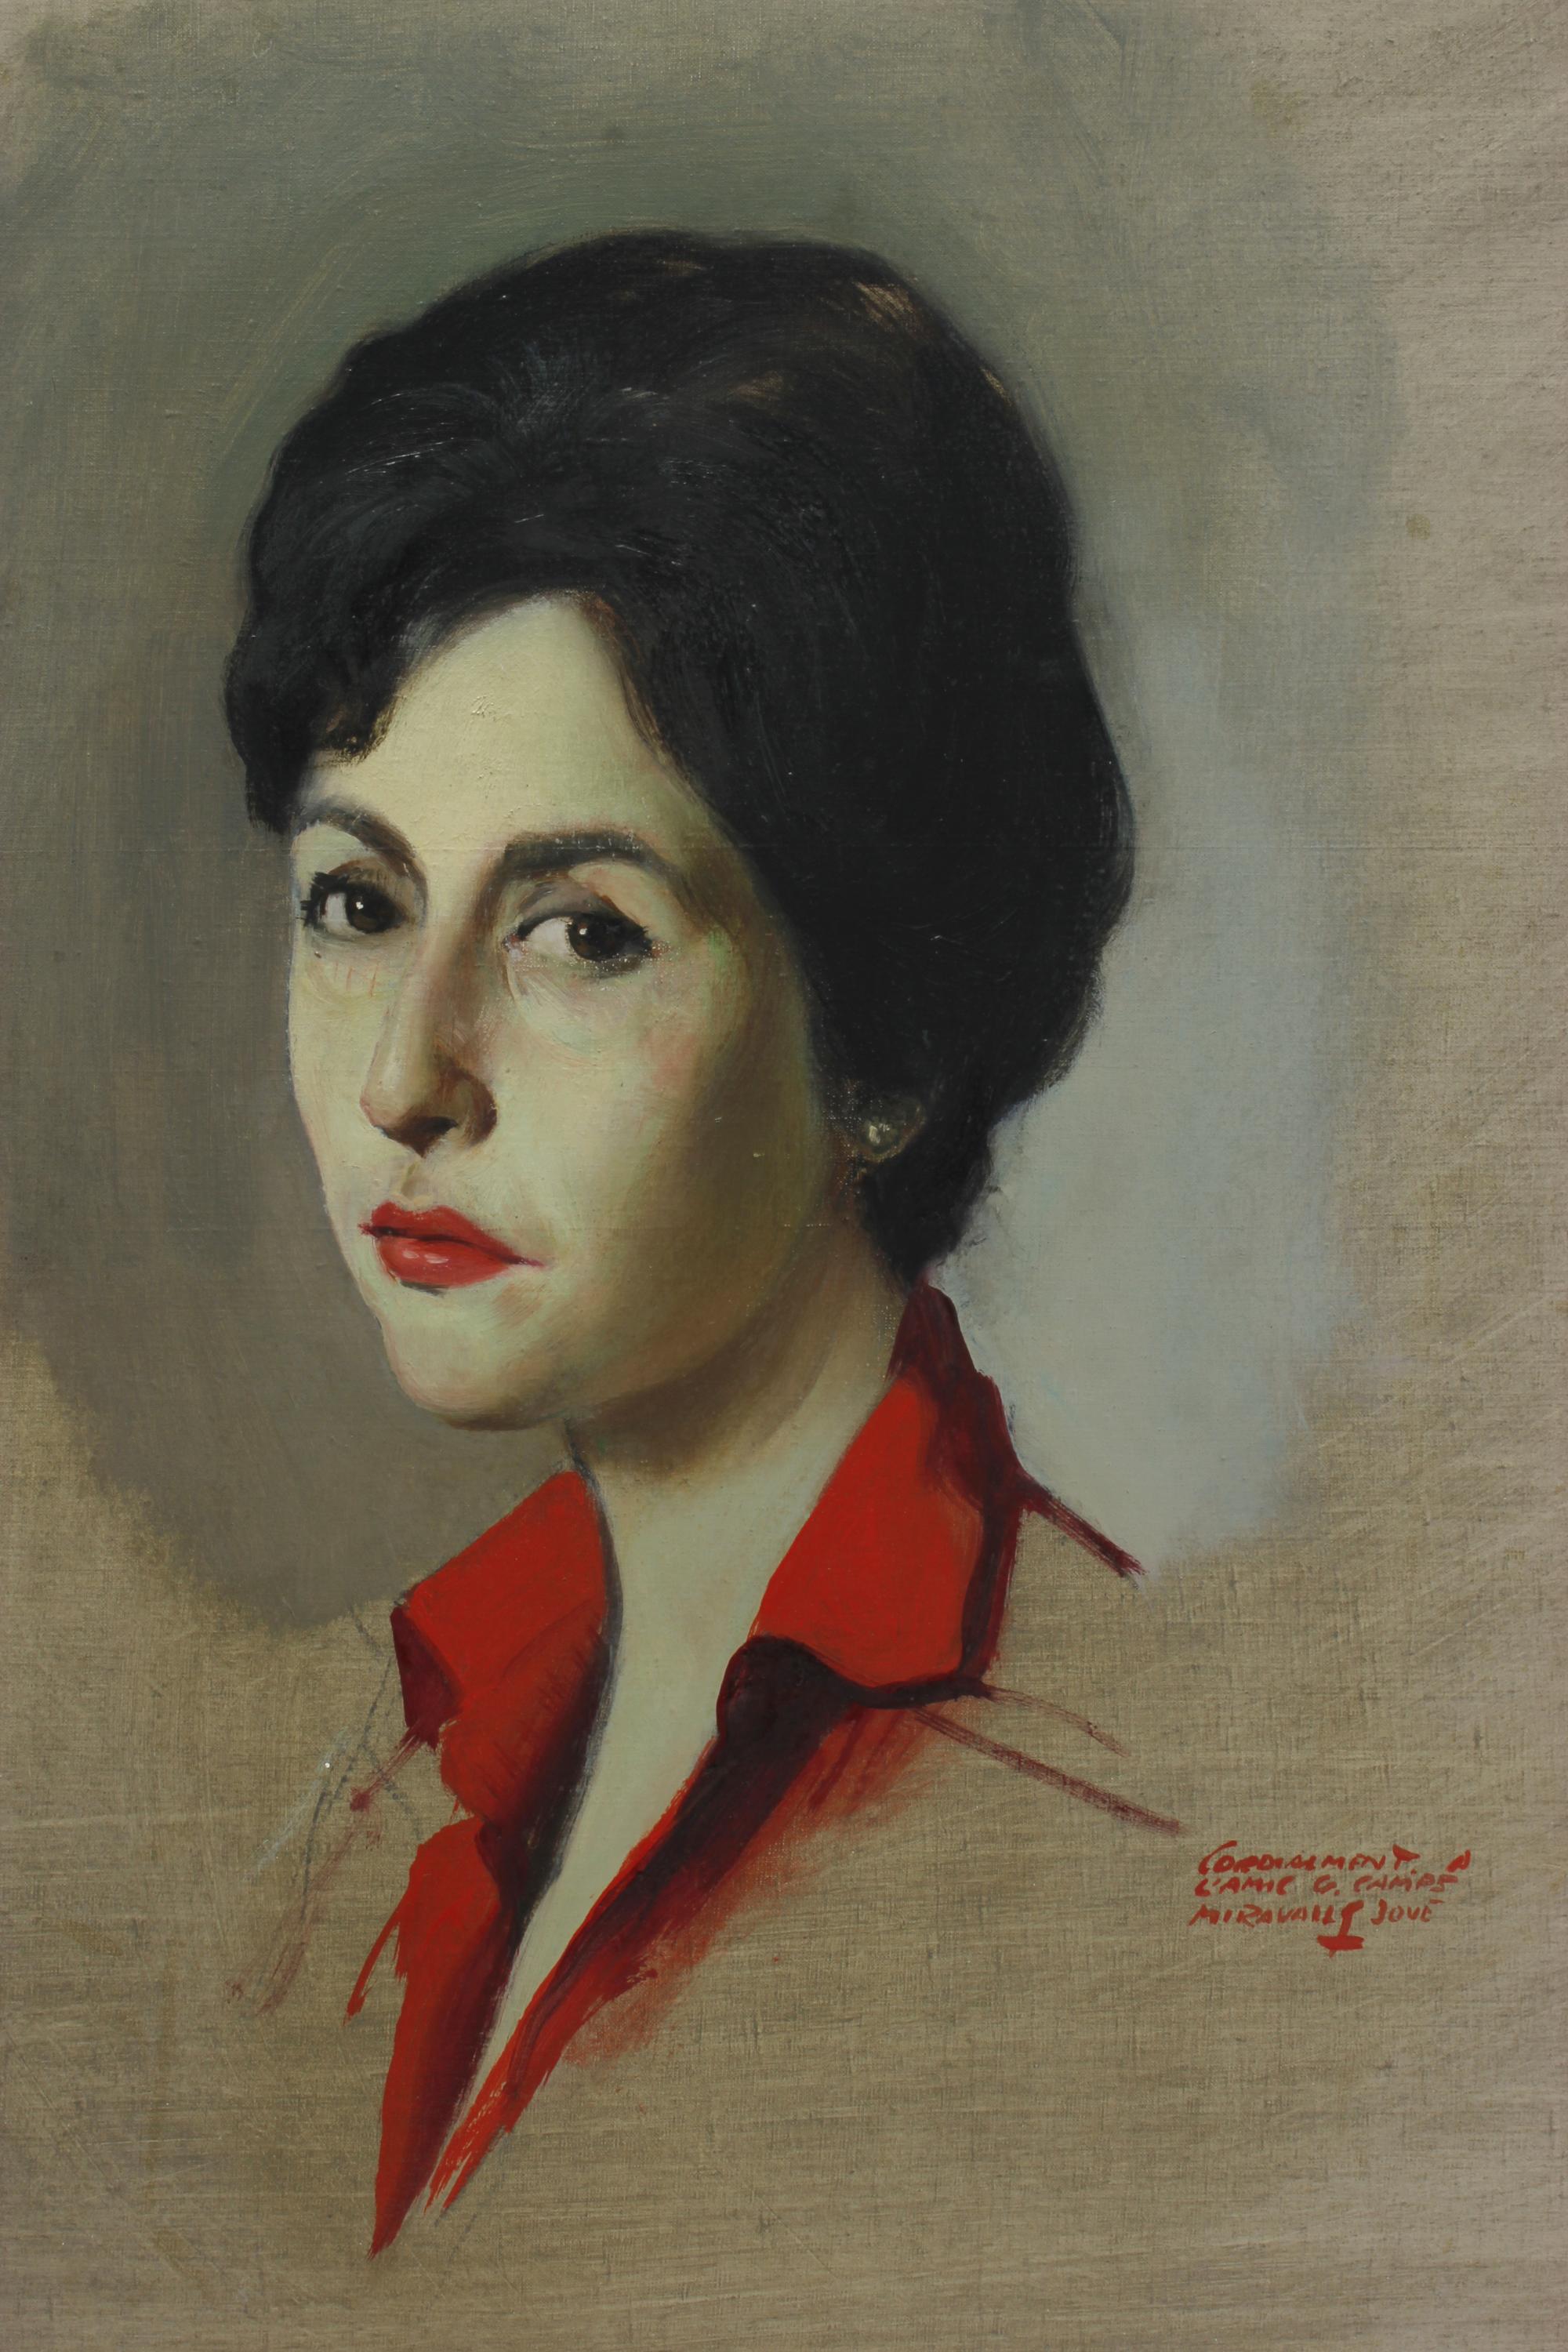 ARMANDO MIRAVALLS BOVE (1916-1978). "RETRATO FEMENINO", 196